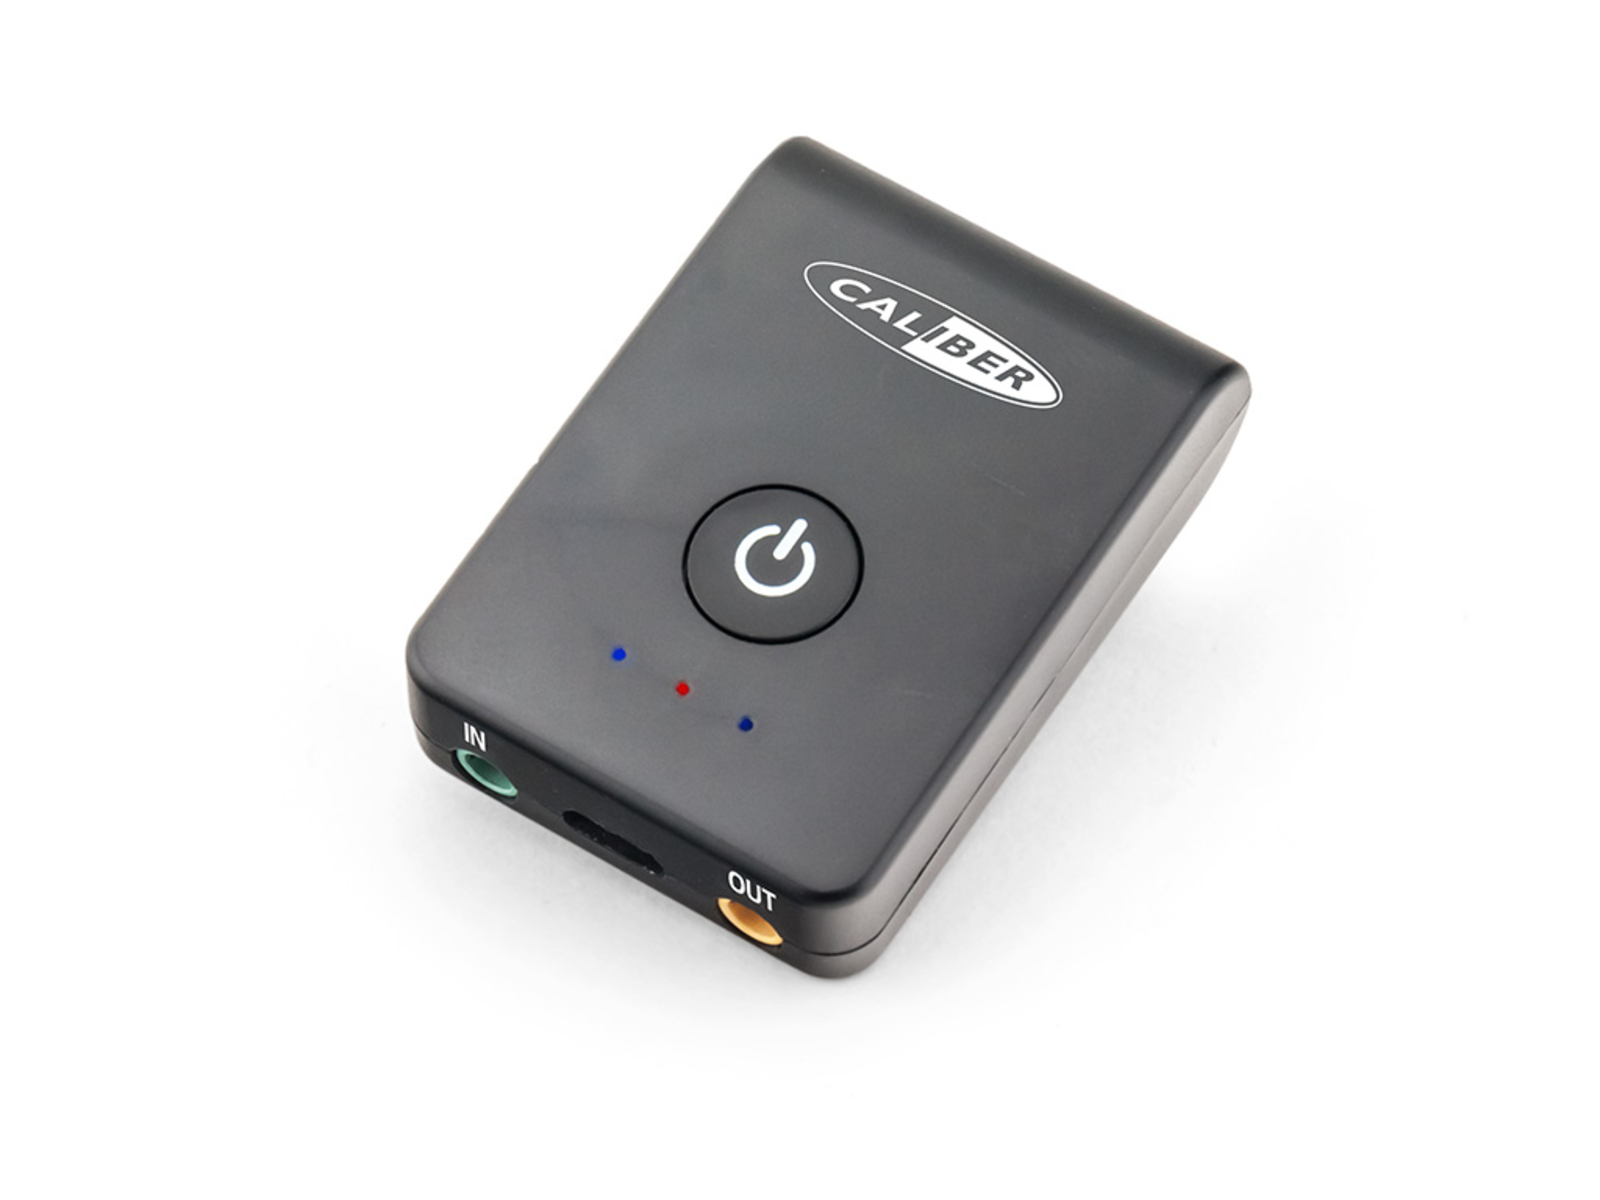 Sender Bluetooth und PMR206BT -Empfänger CALIBER